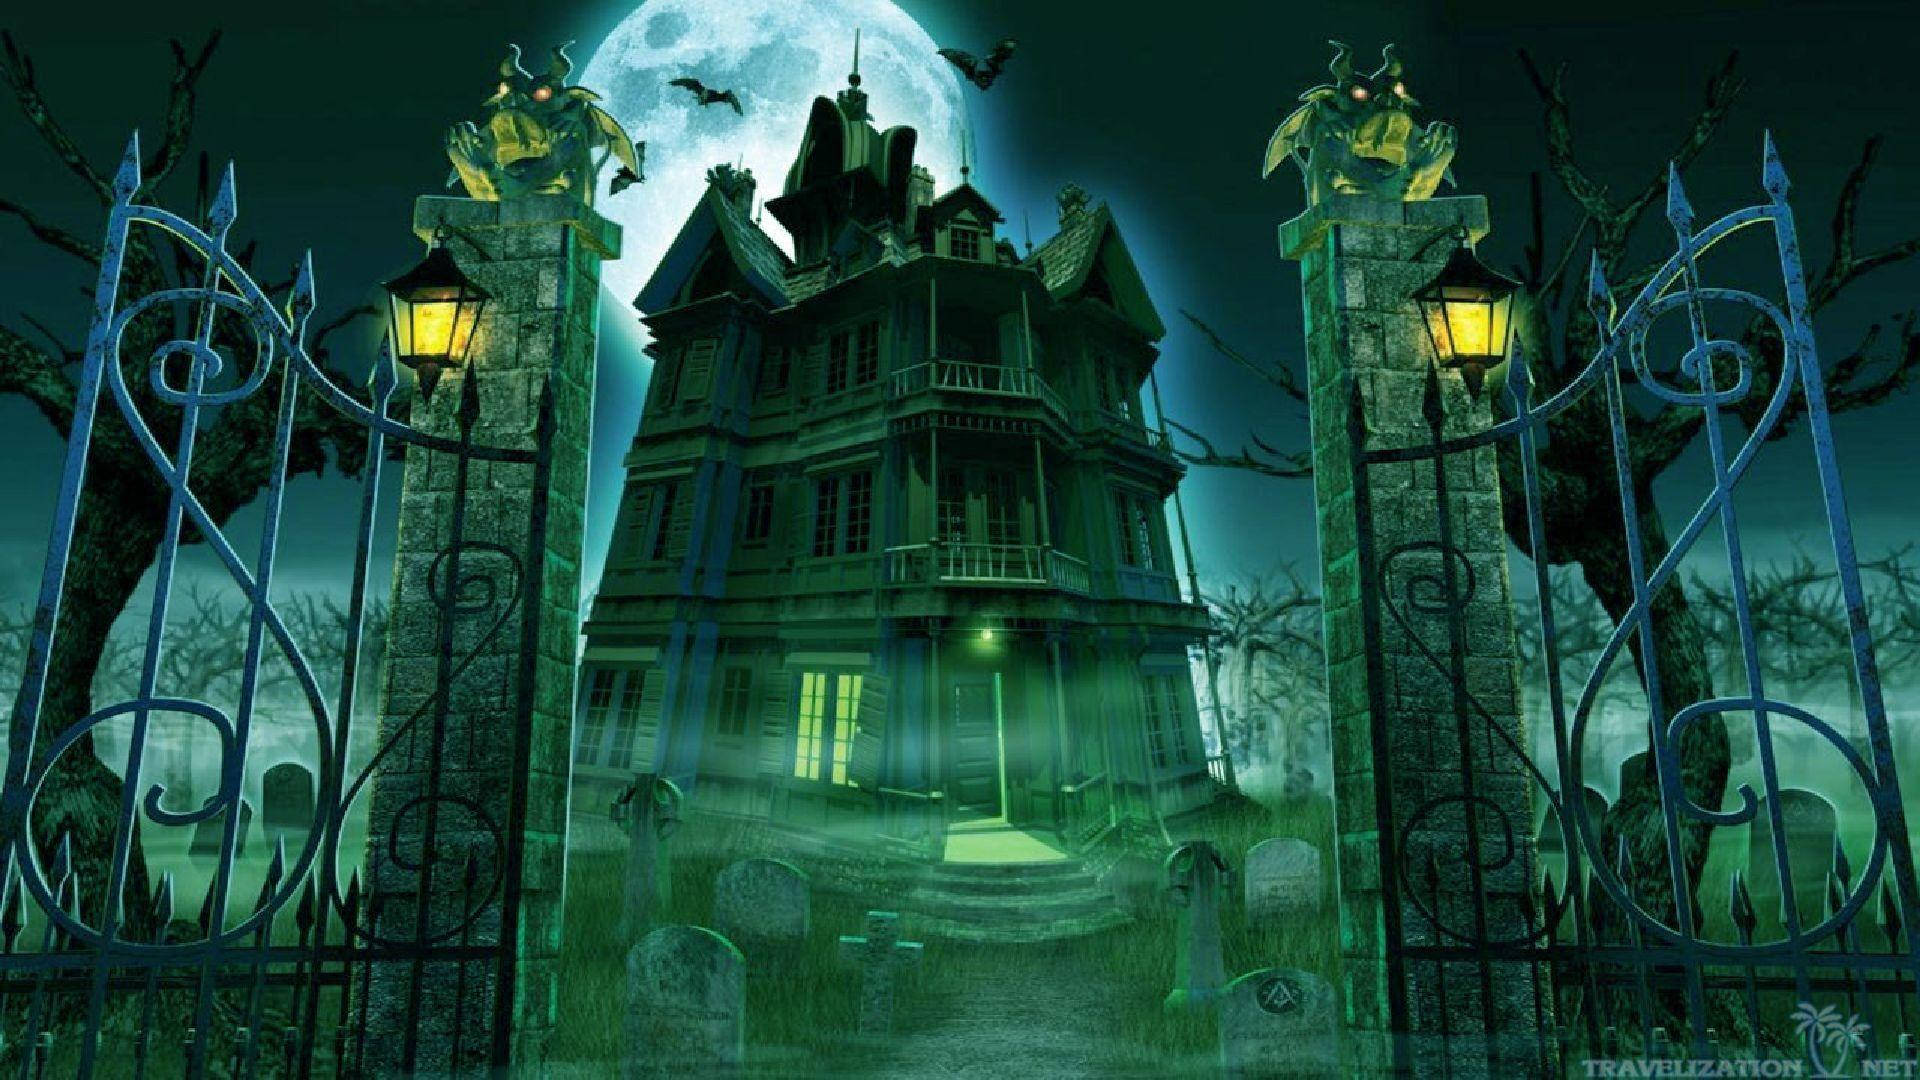 Gør dig klar til at rejse igennem den skræmmende Spøgelseshus denne Halloween. Wallpaper